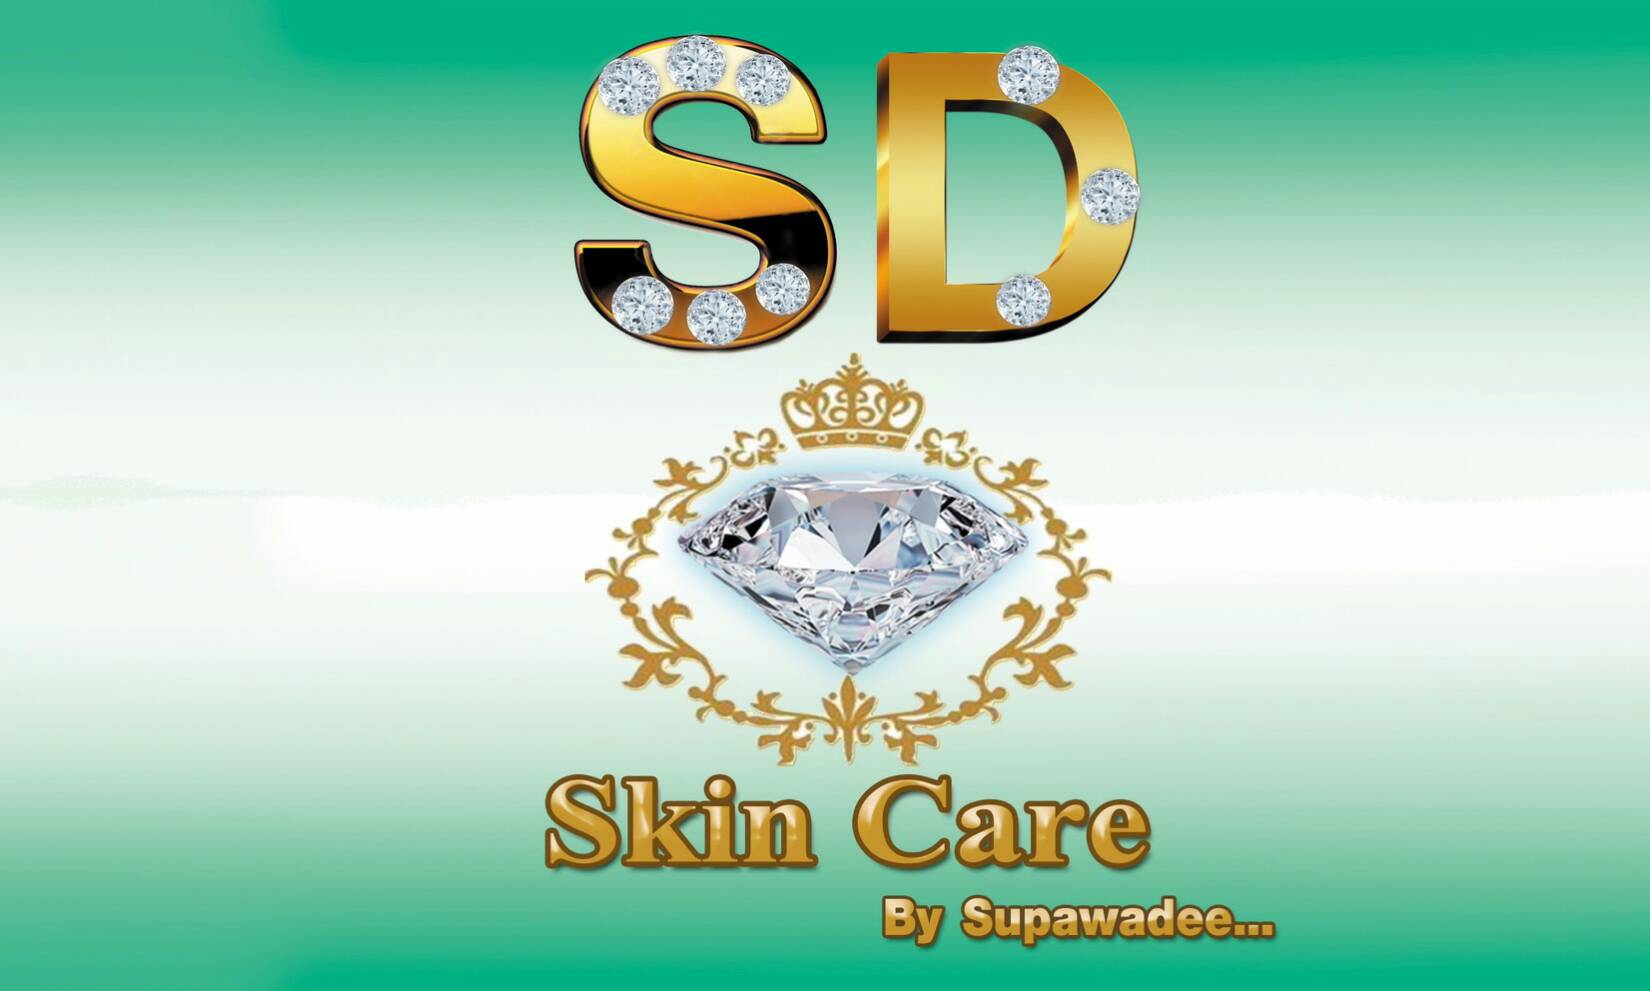 S.D.SKIN CARE BY SUPAWADEE